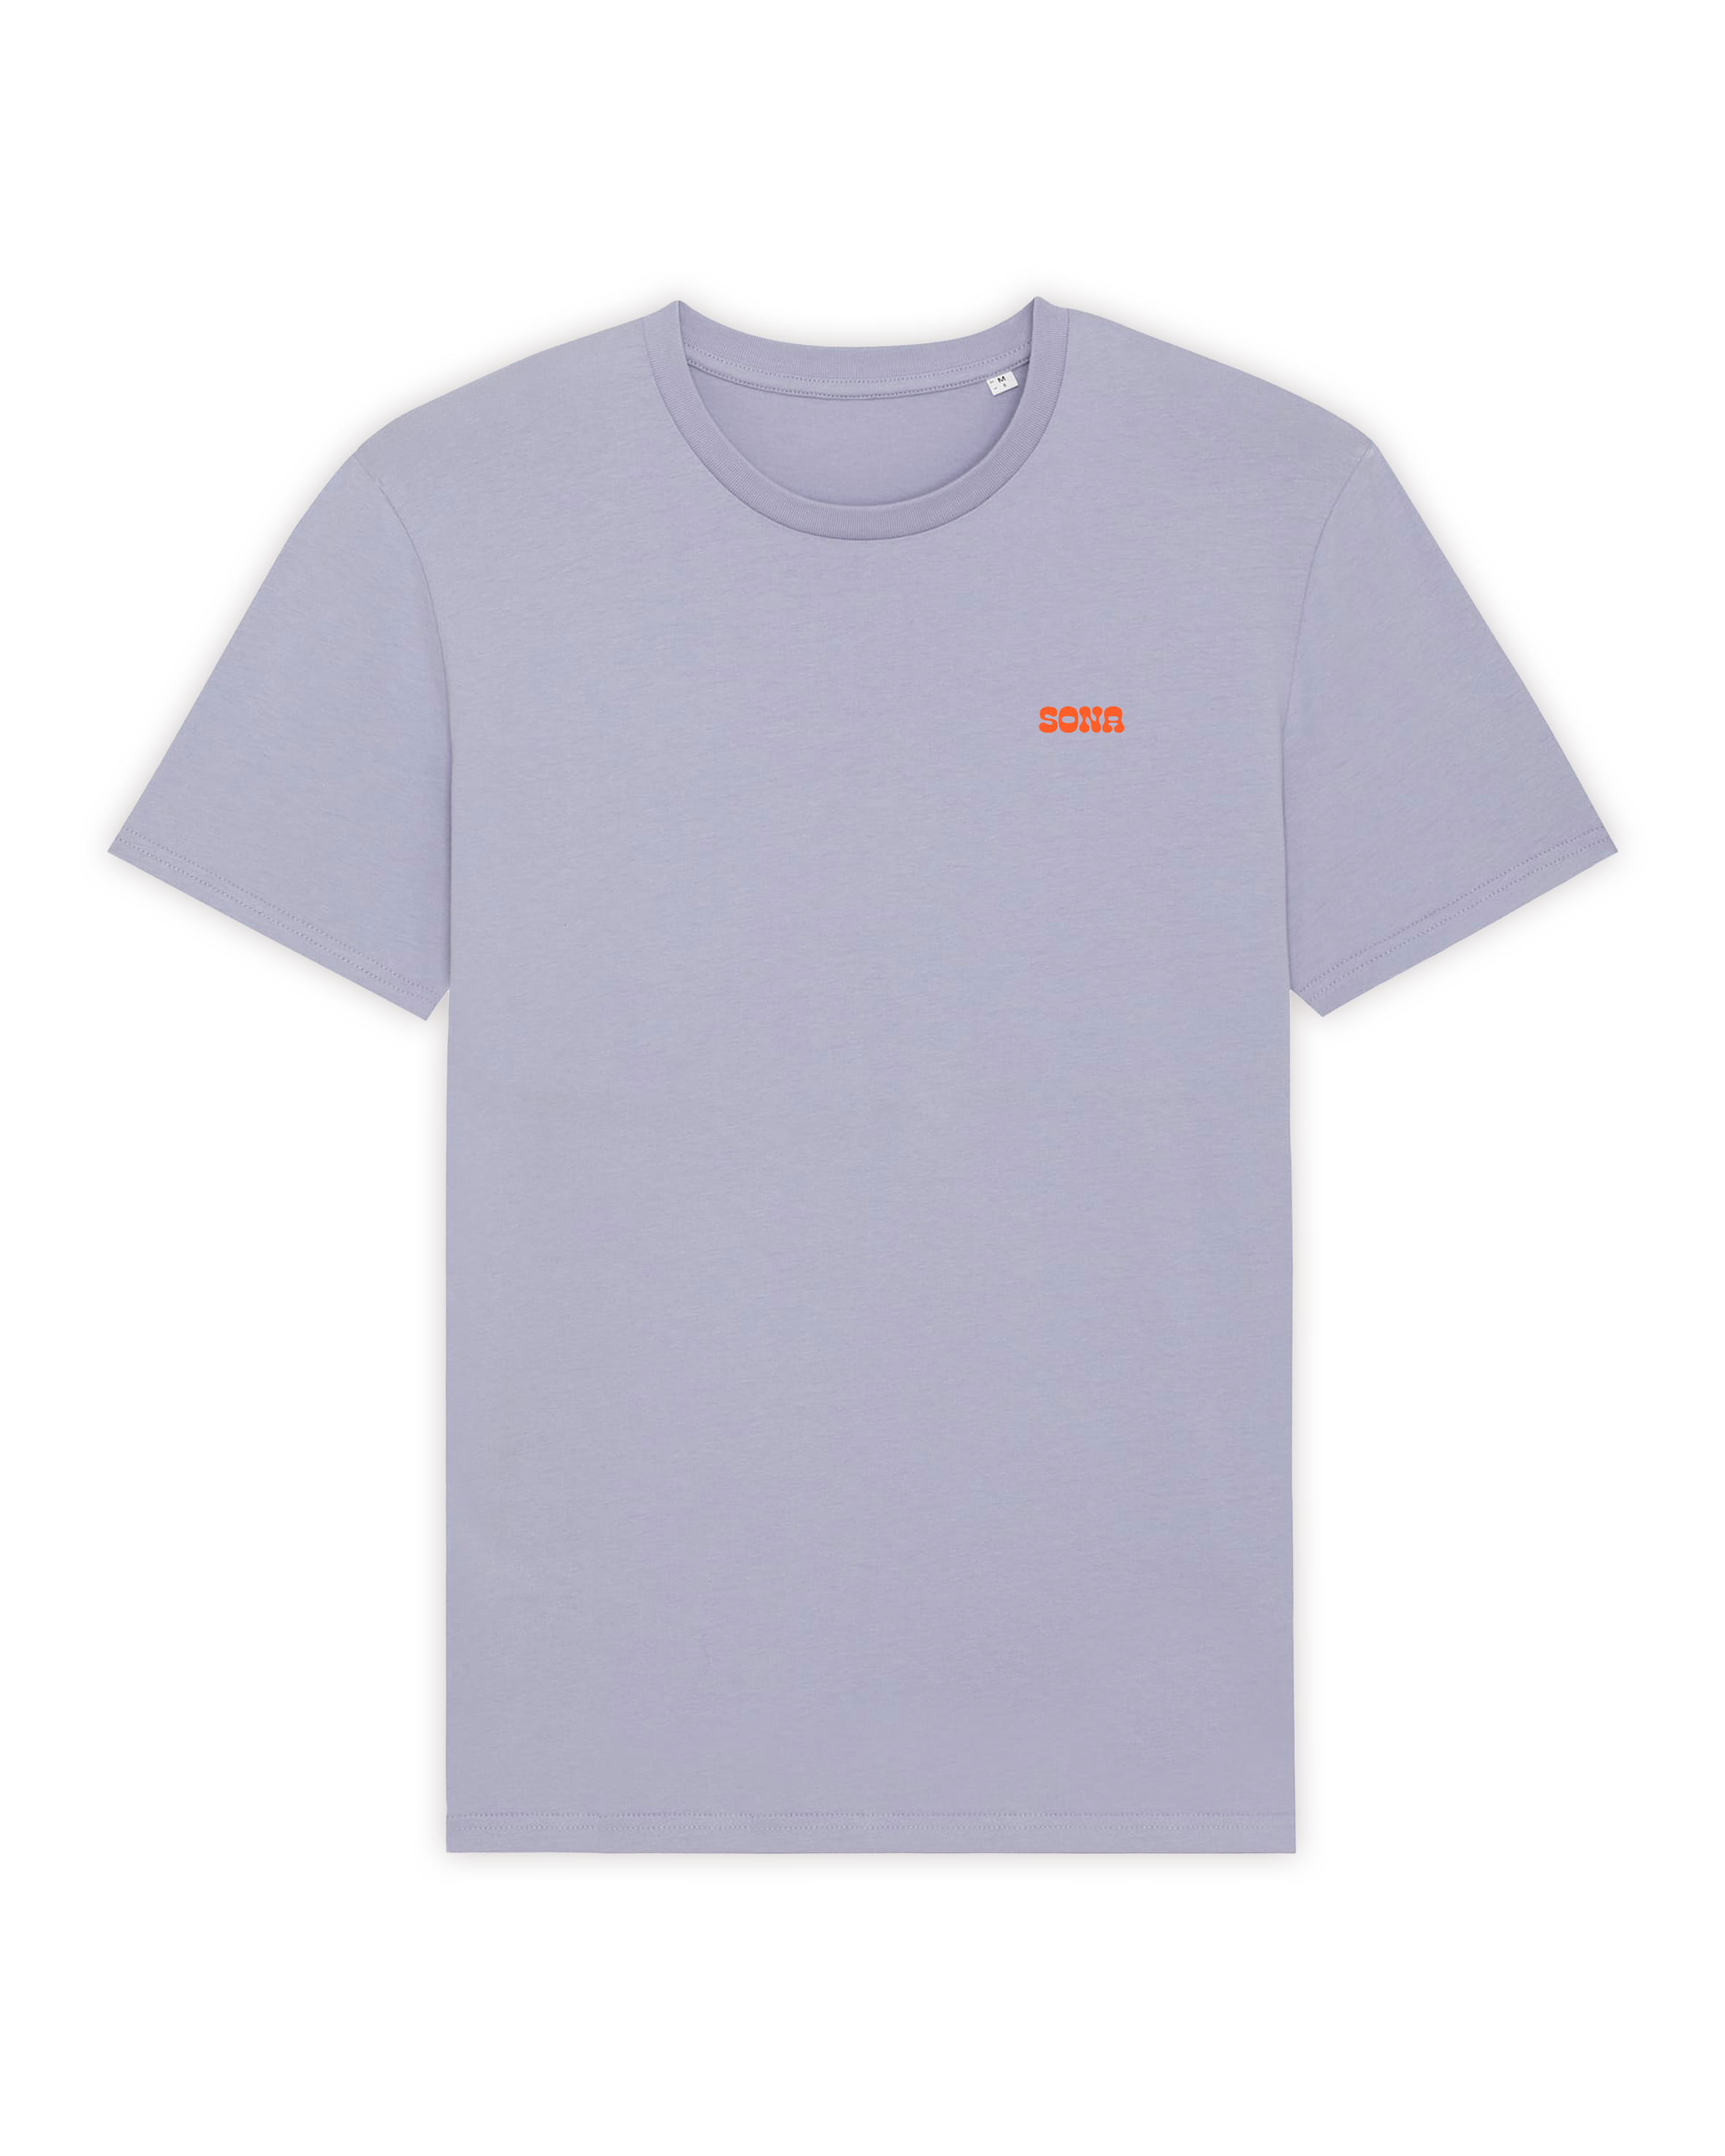 BUNTÀTA T-Shirt - Sona Design